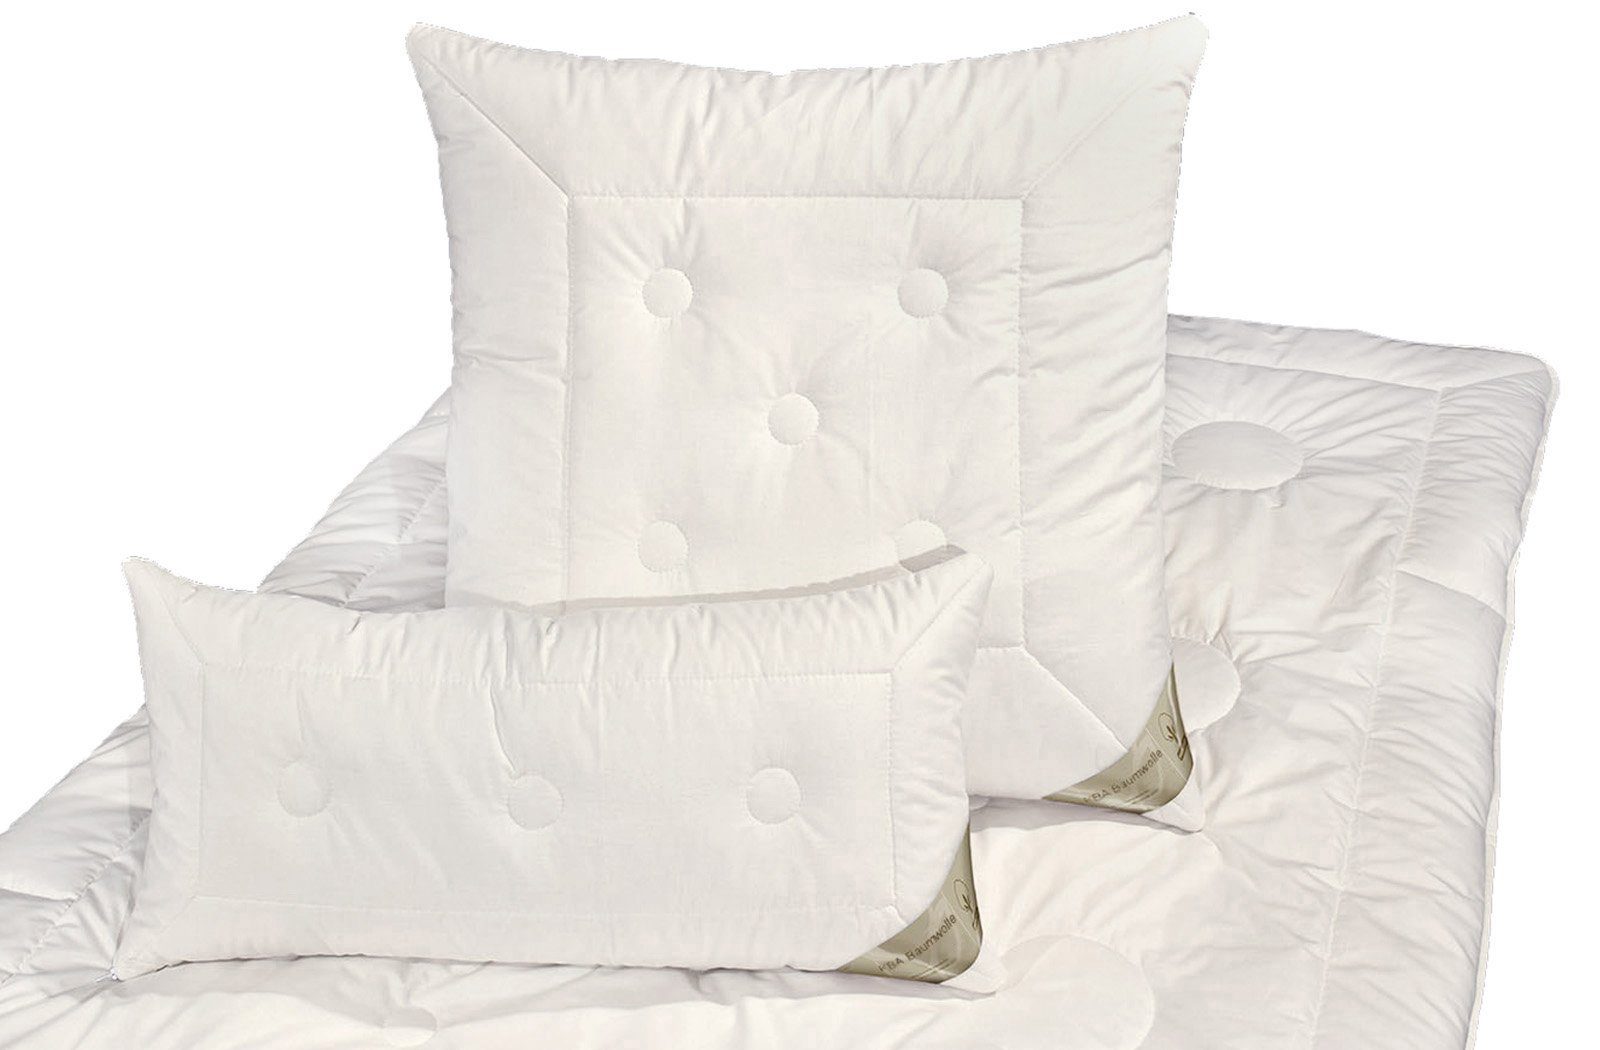 4-Jahreszeitenbett, Nancy, Füllung: kbA, franknatur, 100% Nutzung für 100% Bezug: Baumwolle ganzjährige Bettdecke Baumwolle kbA